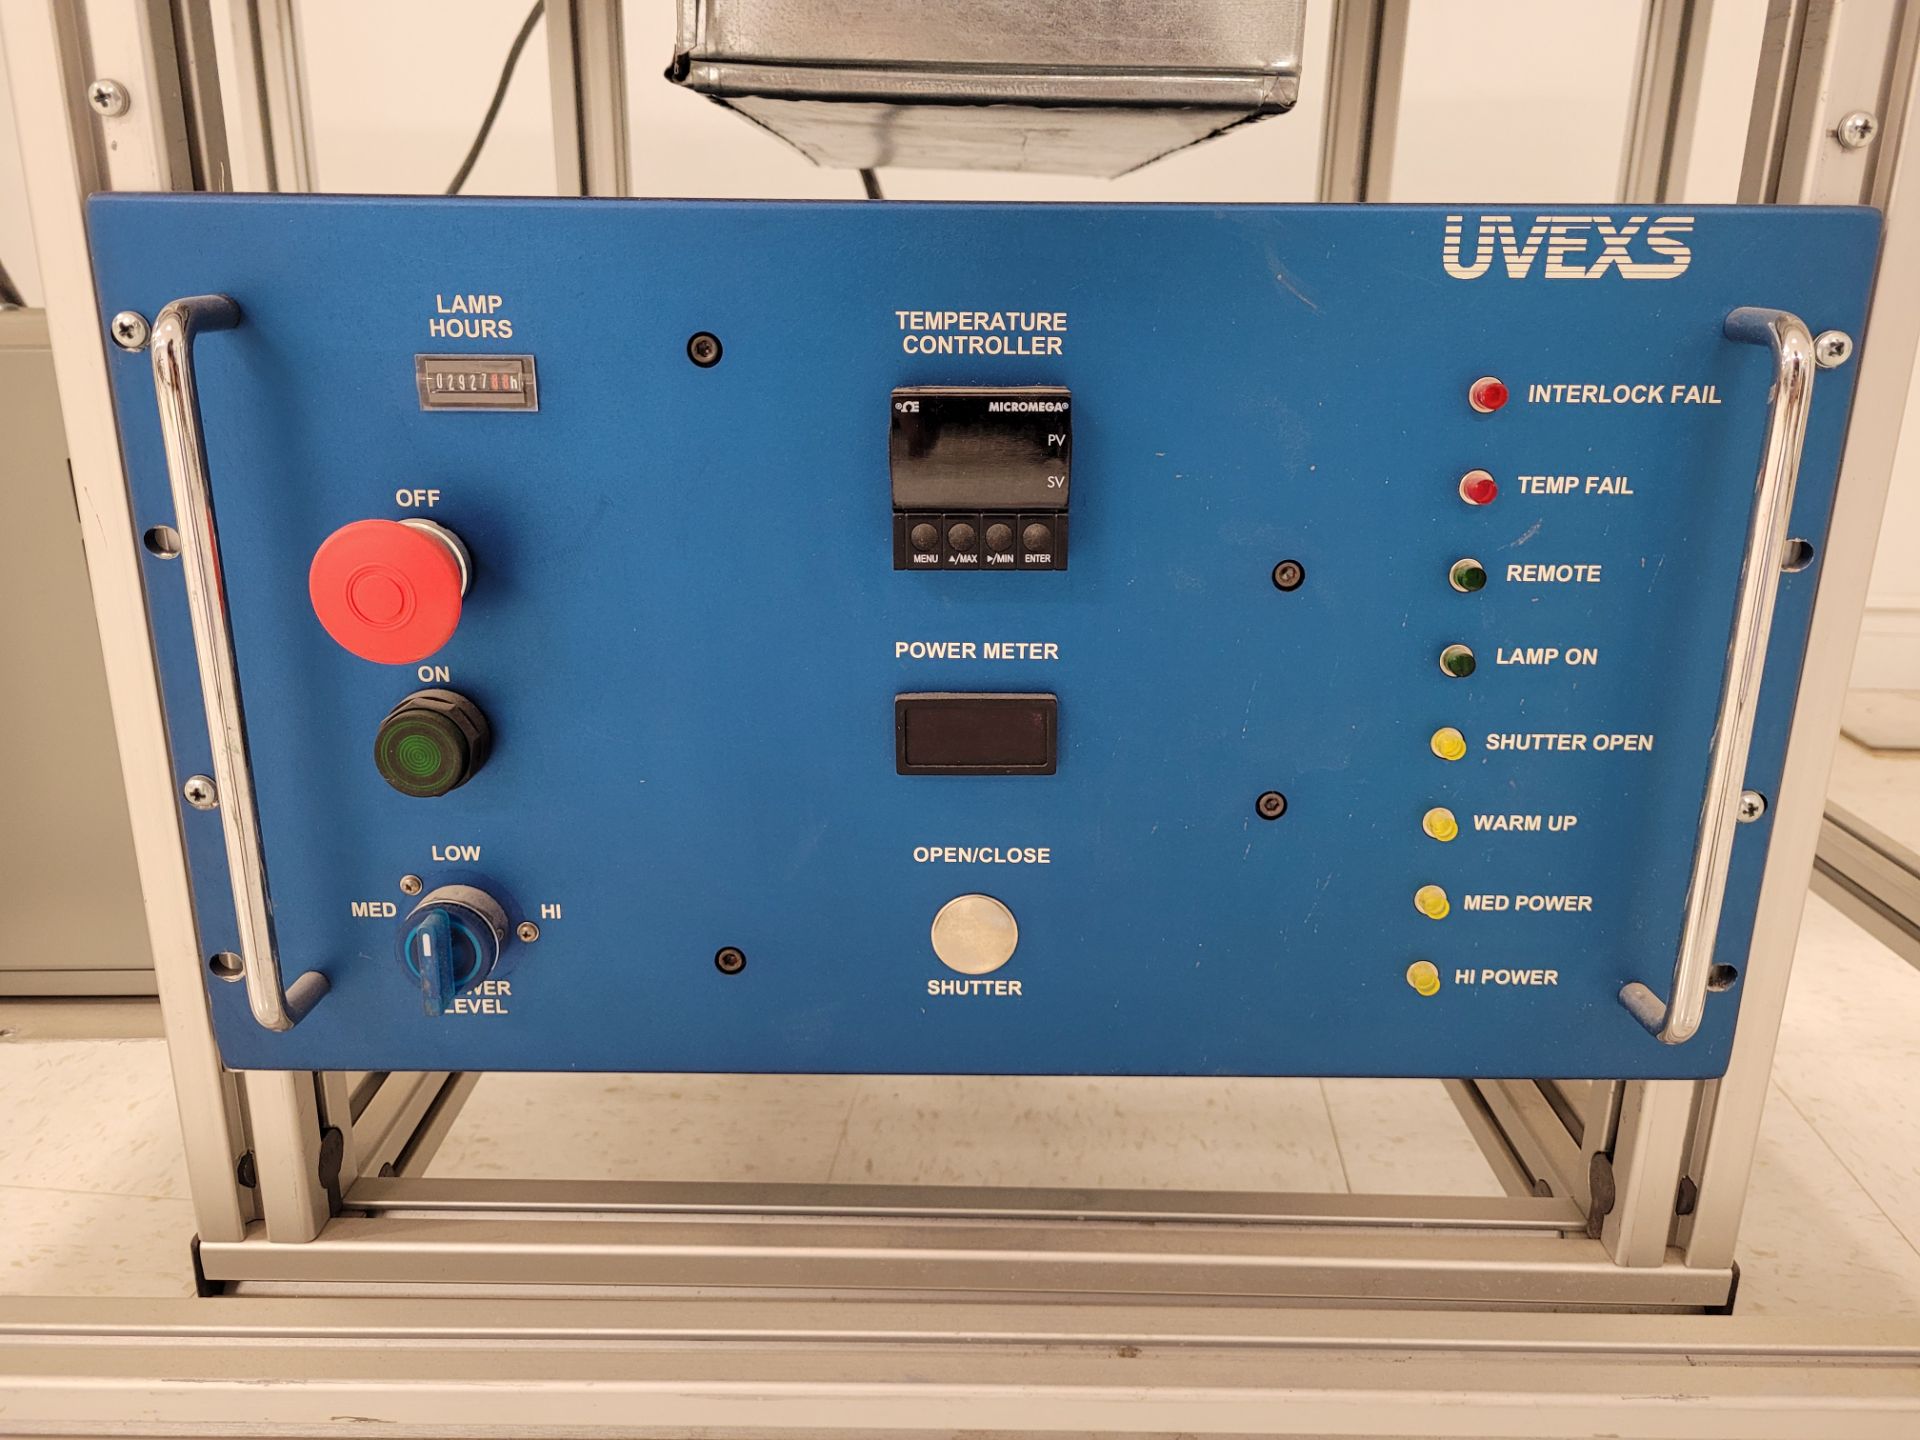 UVEXS INC. Ultraviolet Conveyor Oven mod. 18907 ser. 7099, w/ UVEXS mod. 18909, ser. 7101, 220 V, 30 - Image 10 of 22